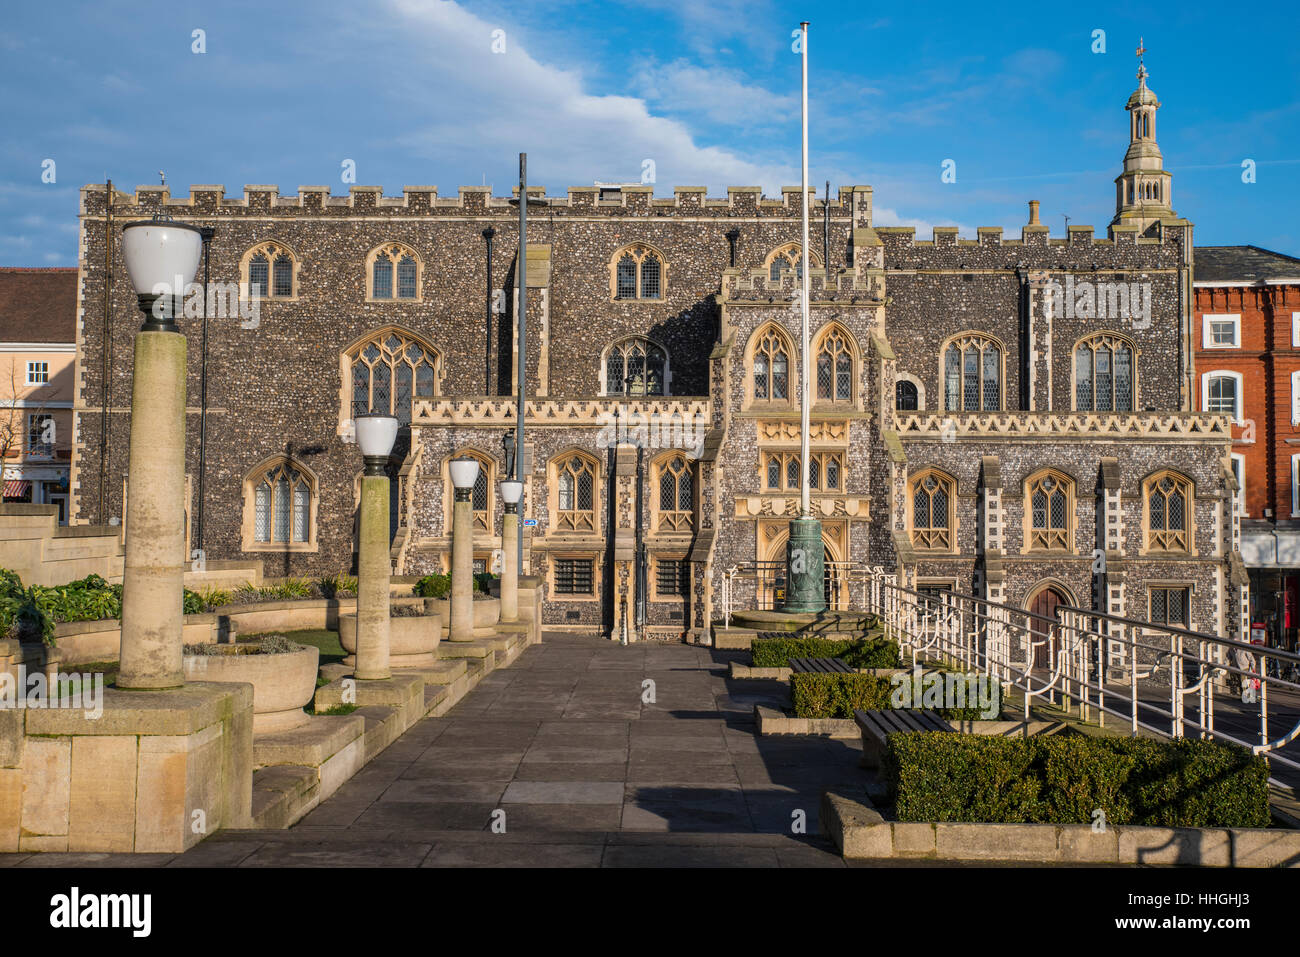 Una vista dell'imponente facciata di Norwich Guildhall situato sulla collina di prigione nella storica città di Norwich, Regno Unito. Foto Stock